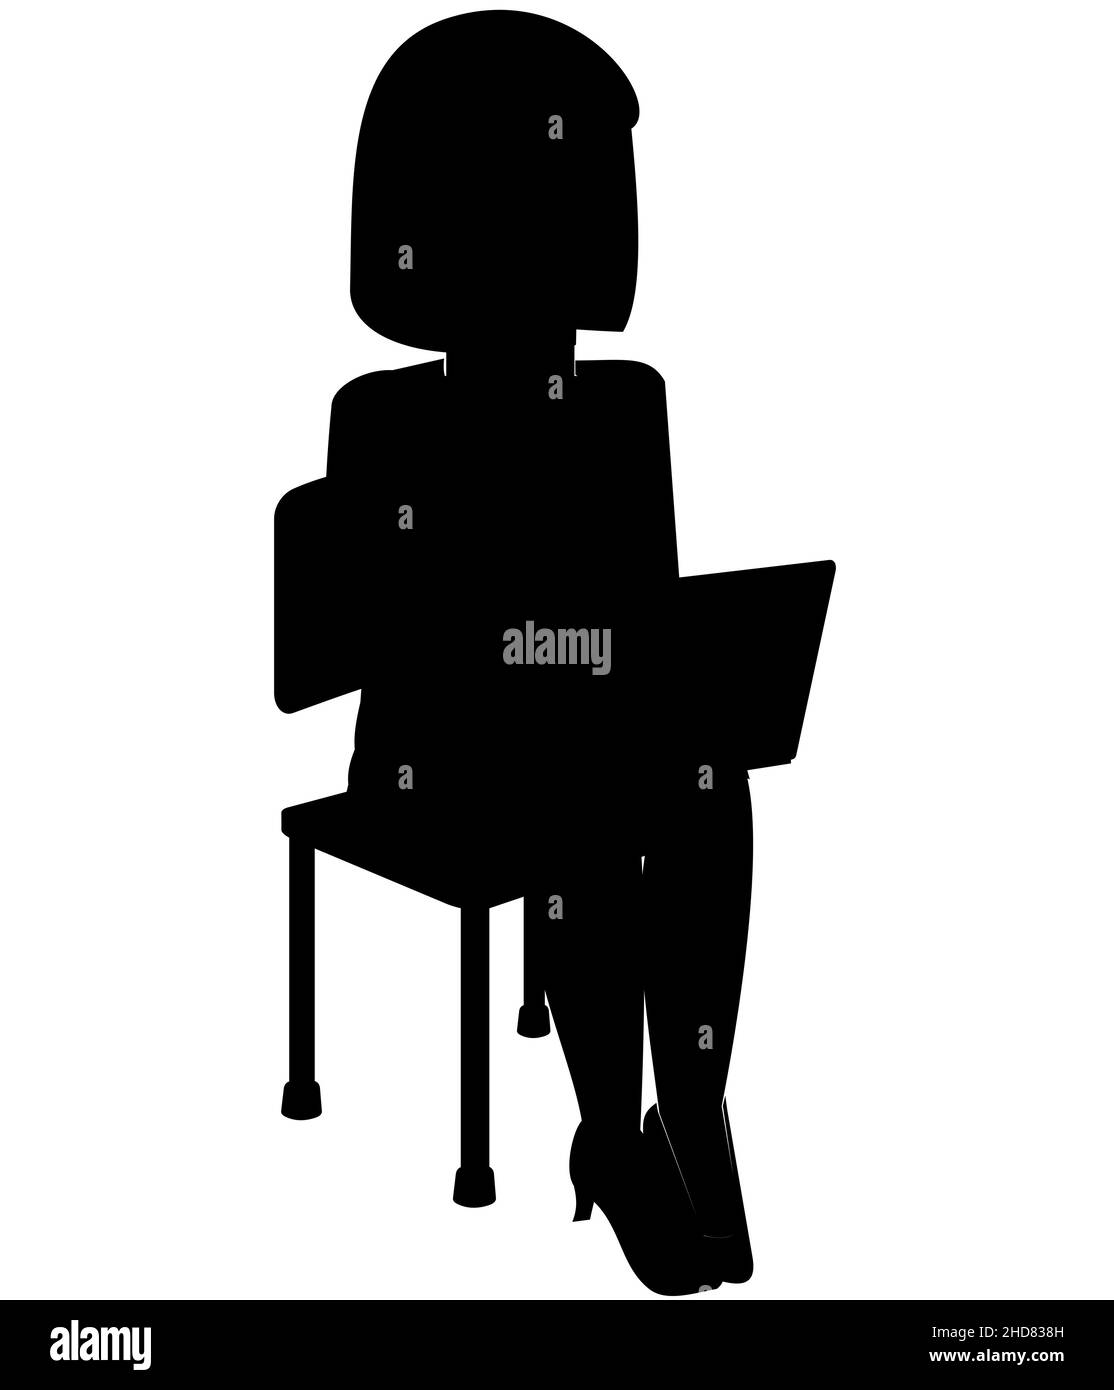 Schwarze Silhouette von Frauen oder Frauen auf einem Laptop, Geschäftsfrau auf einem Stuhl sitzend Stock Vektor